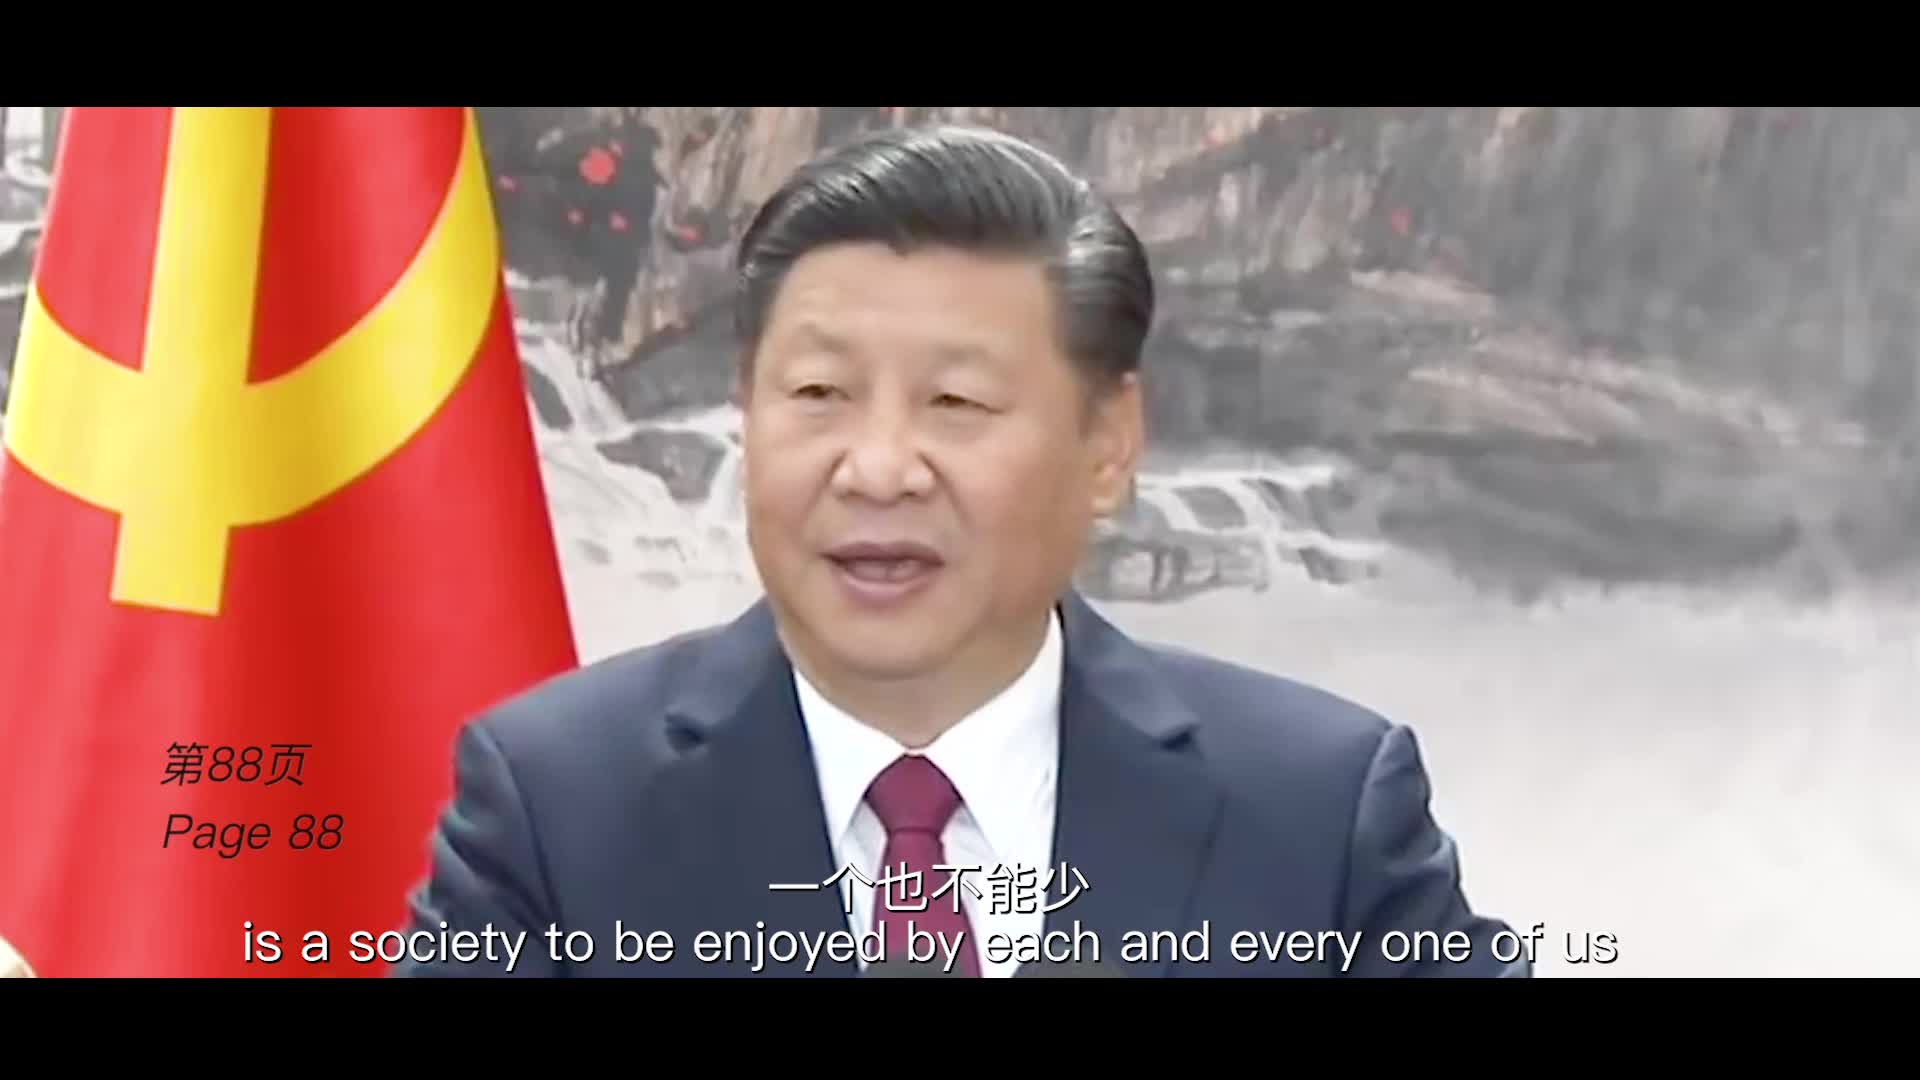 短视频《〈习近平谈治国理政〉第三卷——引领中国新时代》